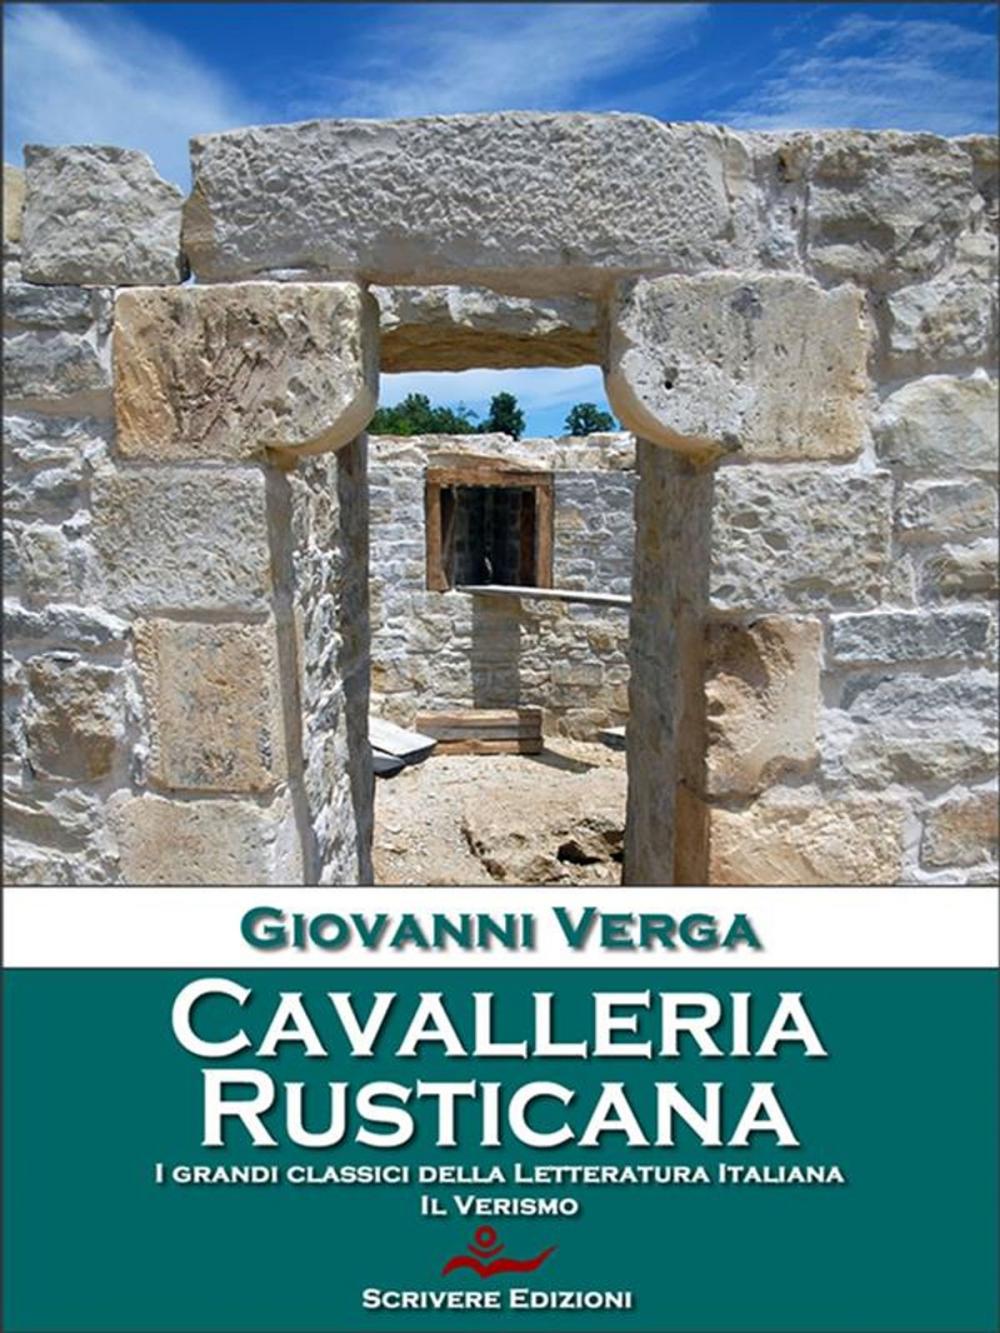 Big bigCover of Cavalleria rusticana